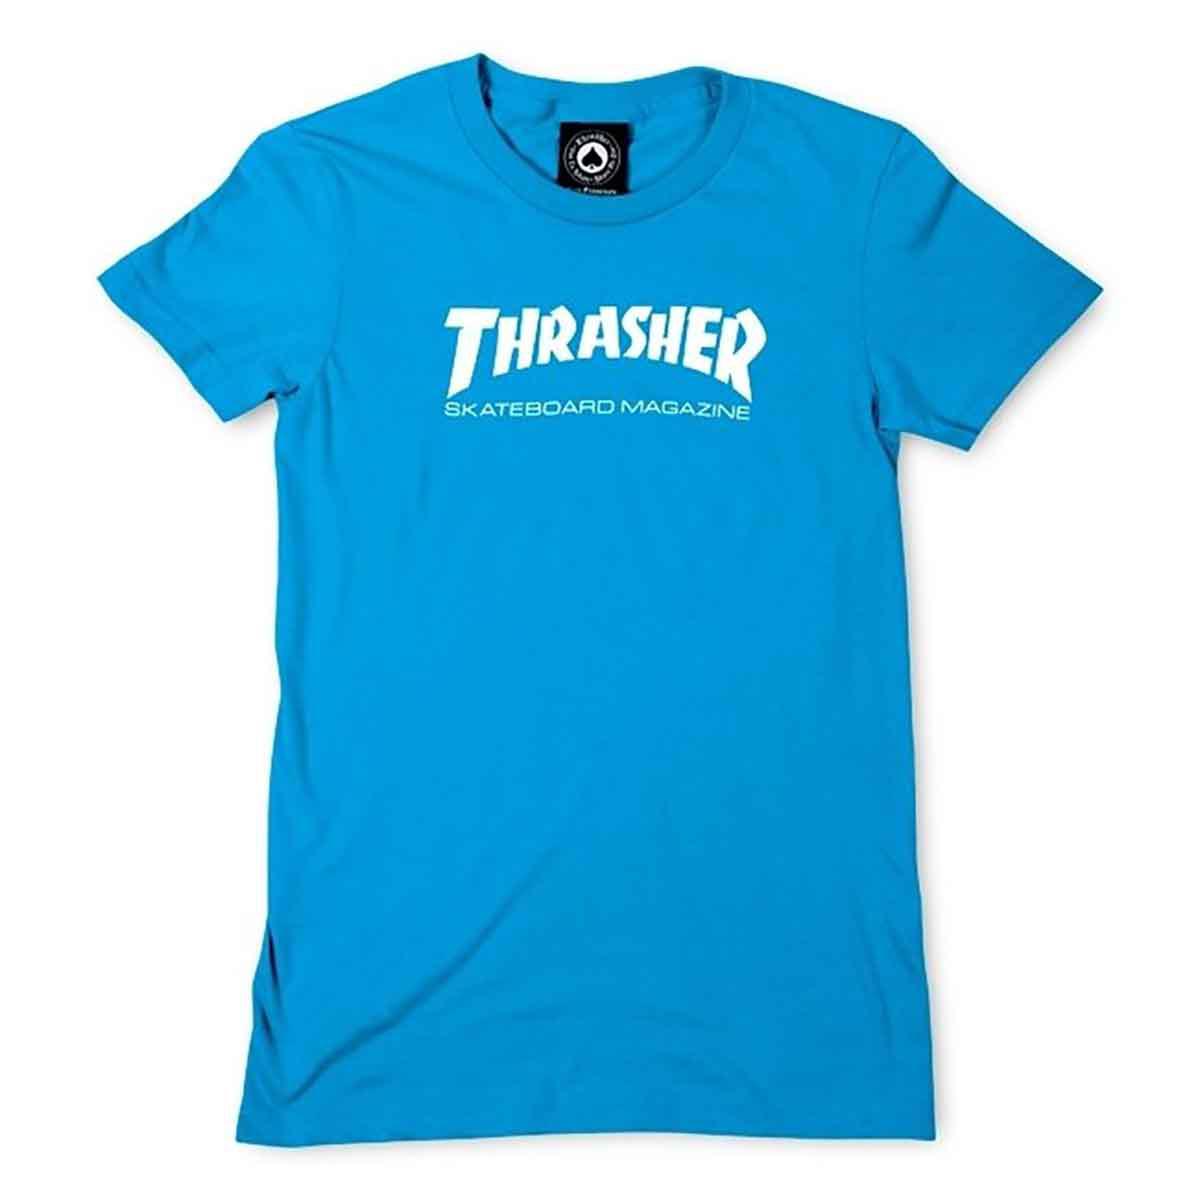 Youth Large Blue Thrasher T-Shirt